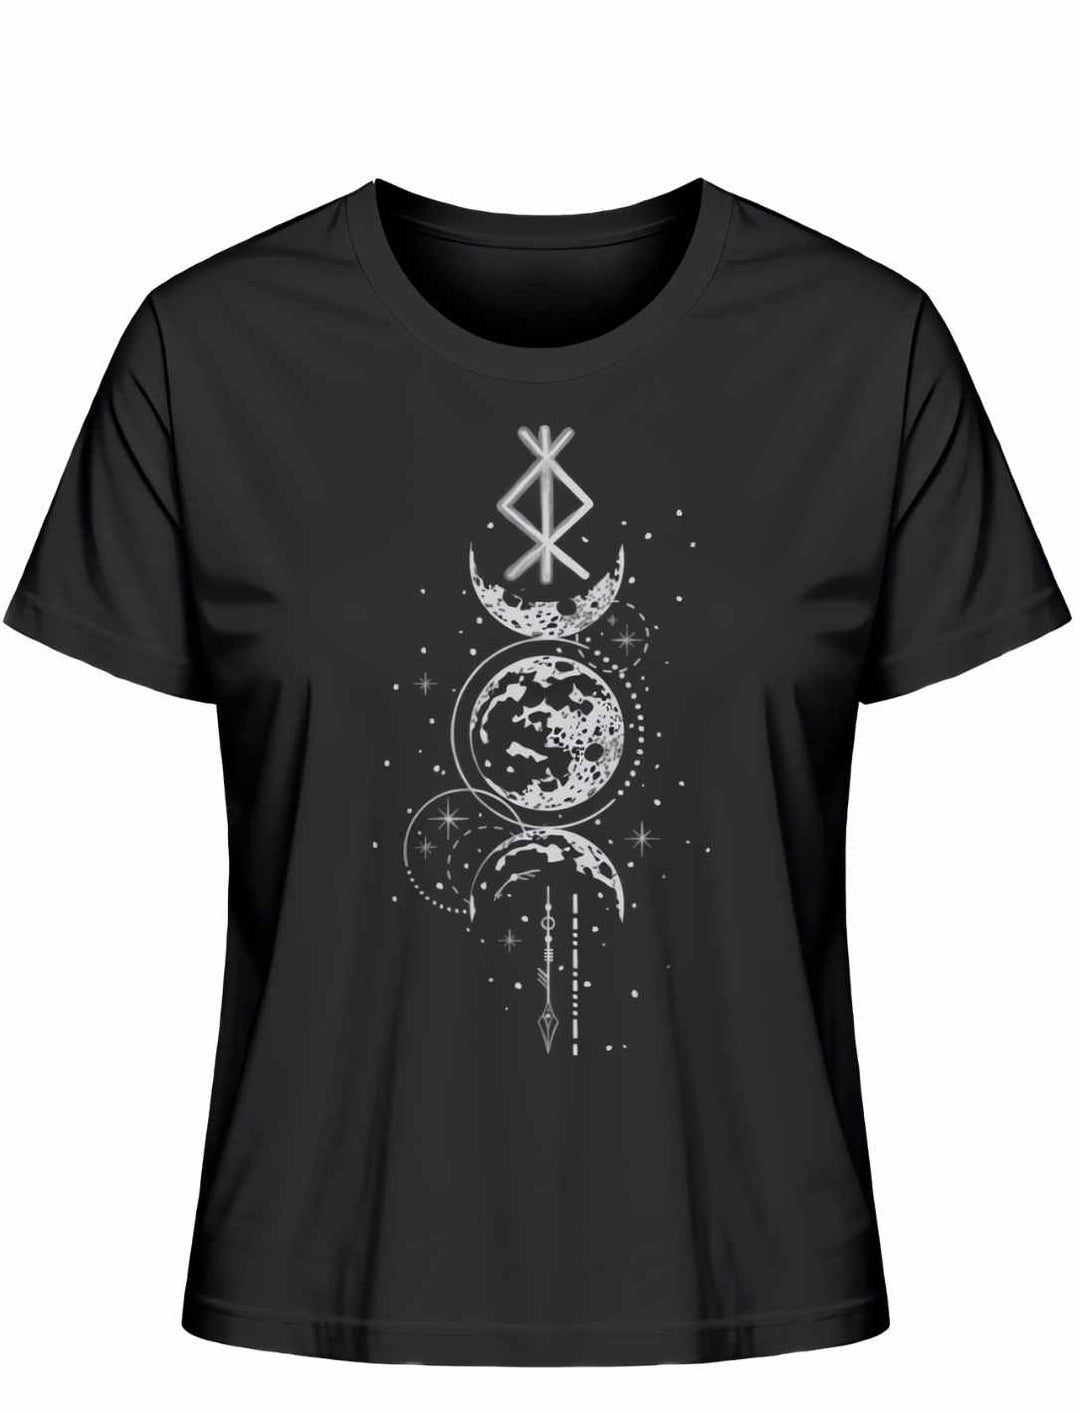 Damen T-Shirt - Rune des Mondschein Wächters, nordisches Design in der Farbe schwarz. Von Runental.de